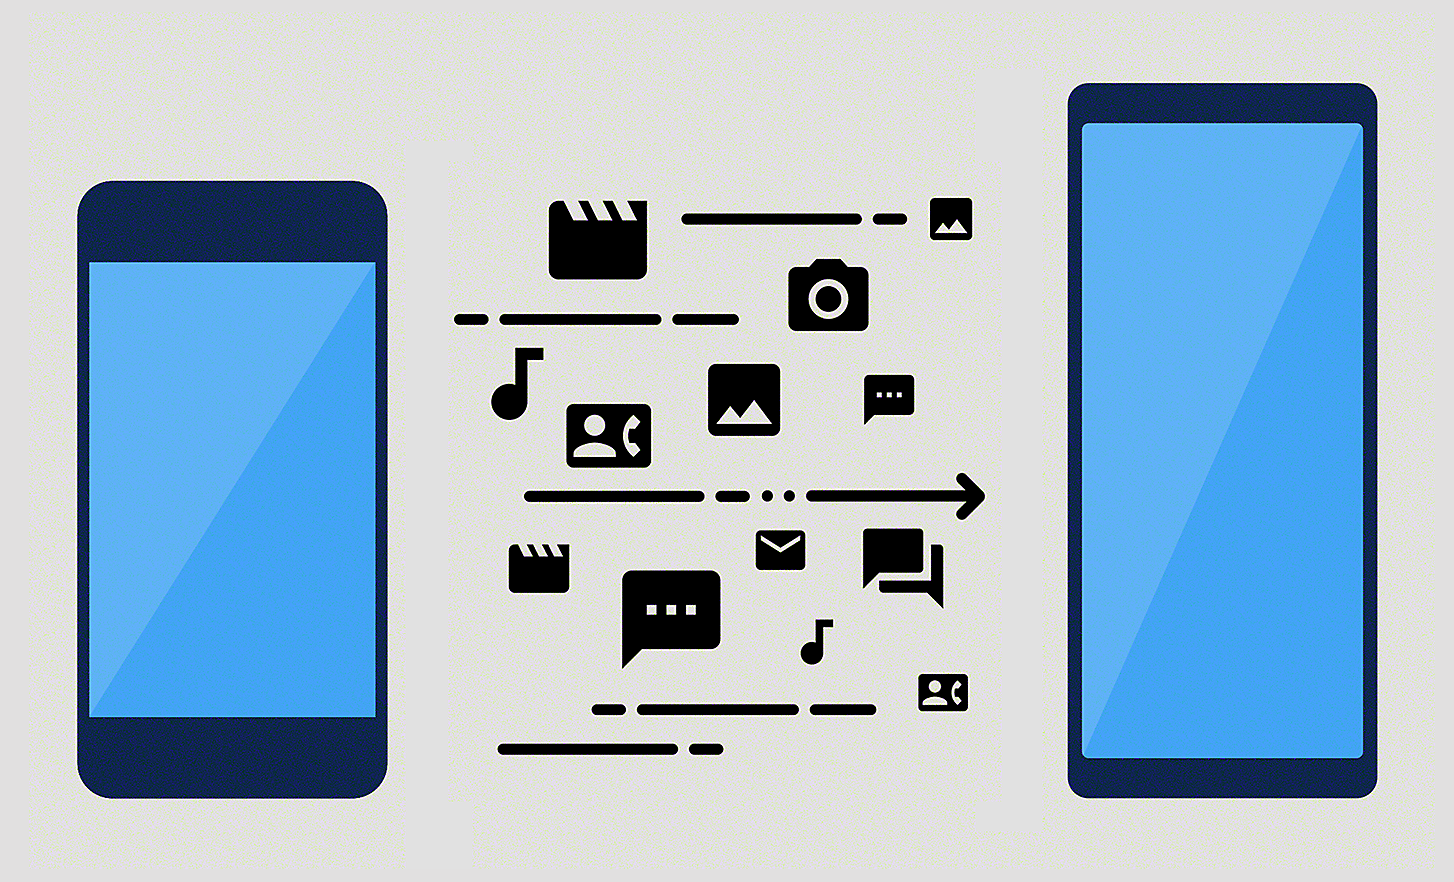 Ilustrația prezintă conținutul care se transferă de pe un smartphone pe altul